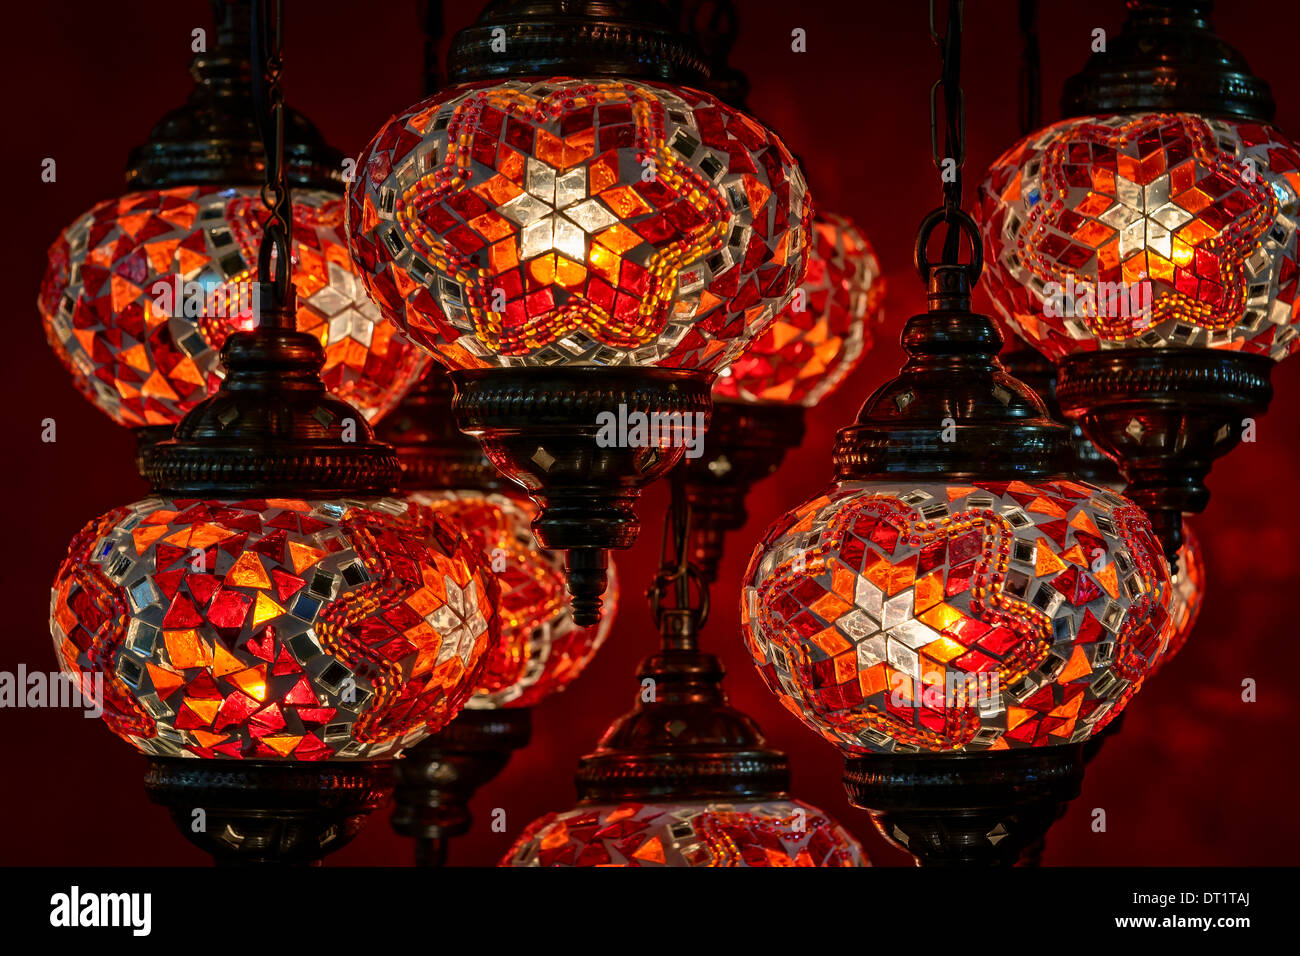 Lampada turca immagine stock. Immagine di emirato, decorazione - 40779887